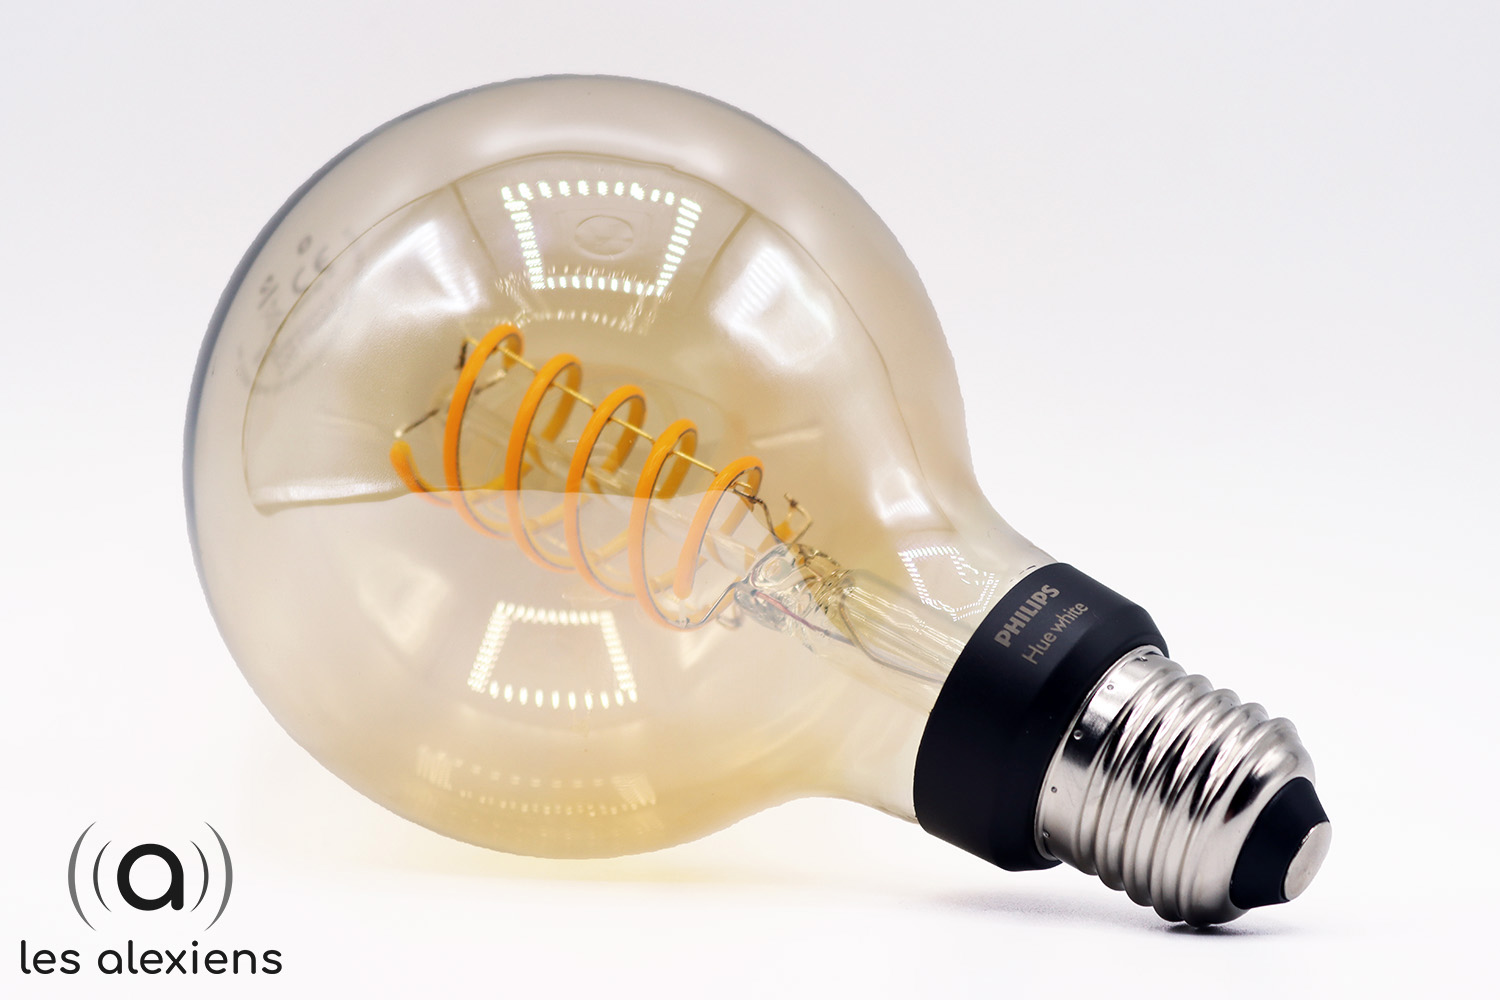 Phillips Hue présente des ampoules connectées à filament à l'IFA 2019